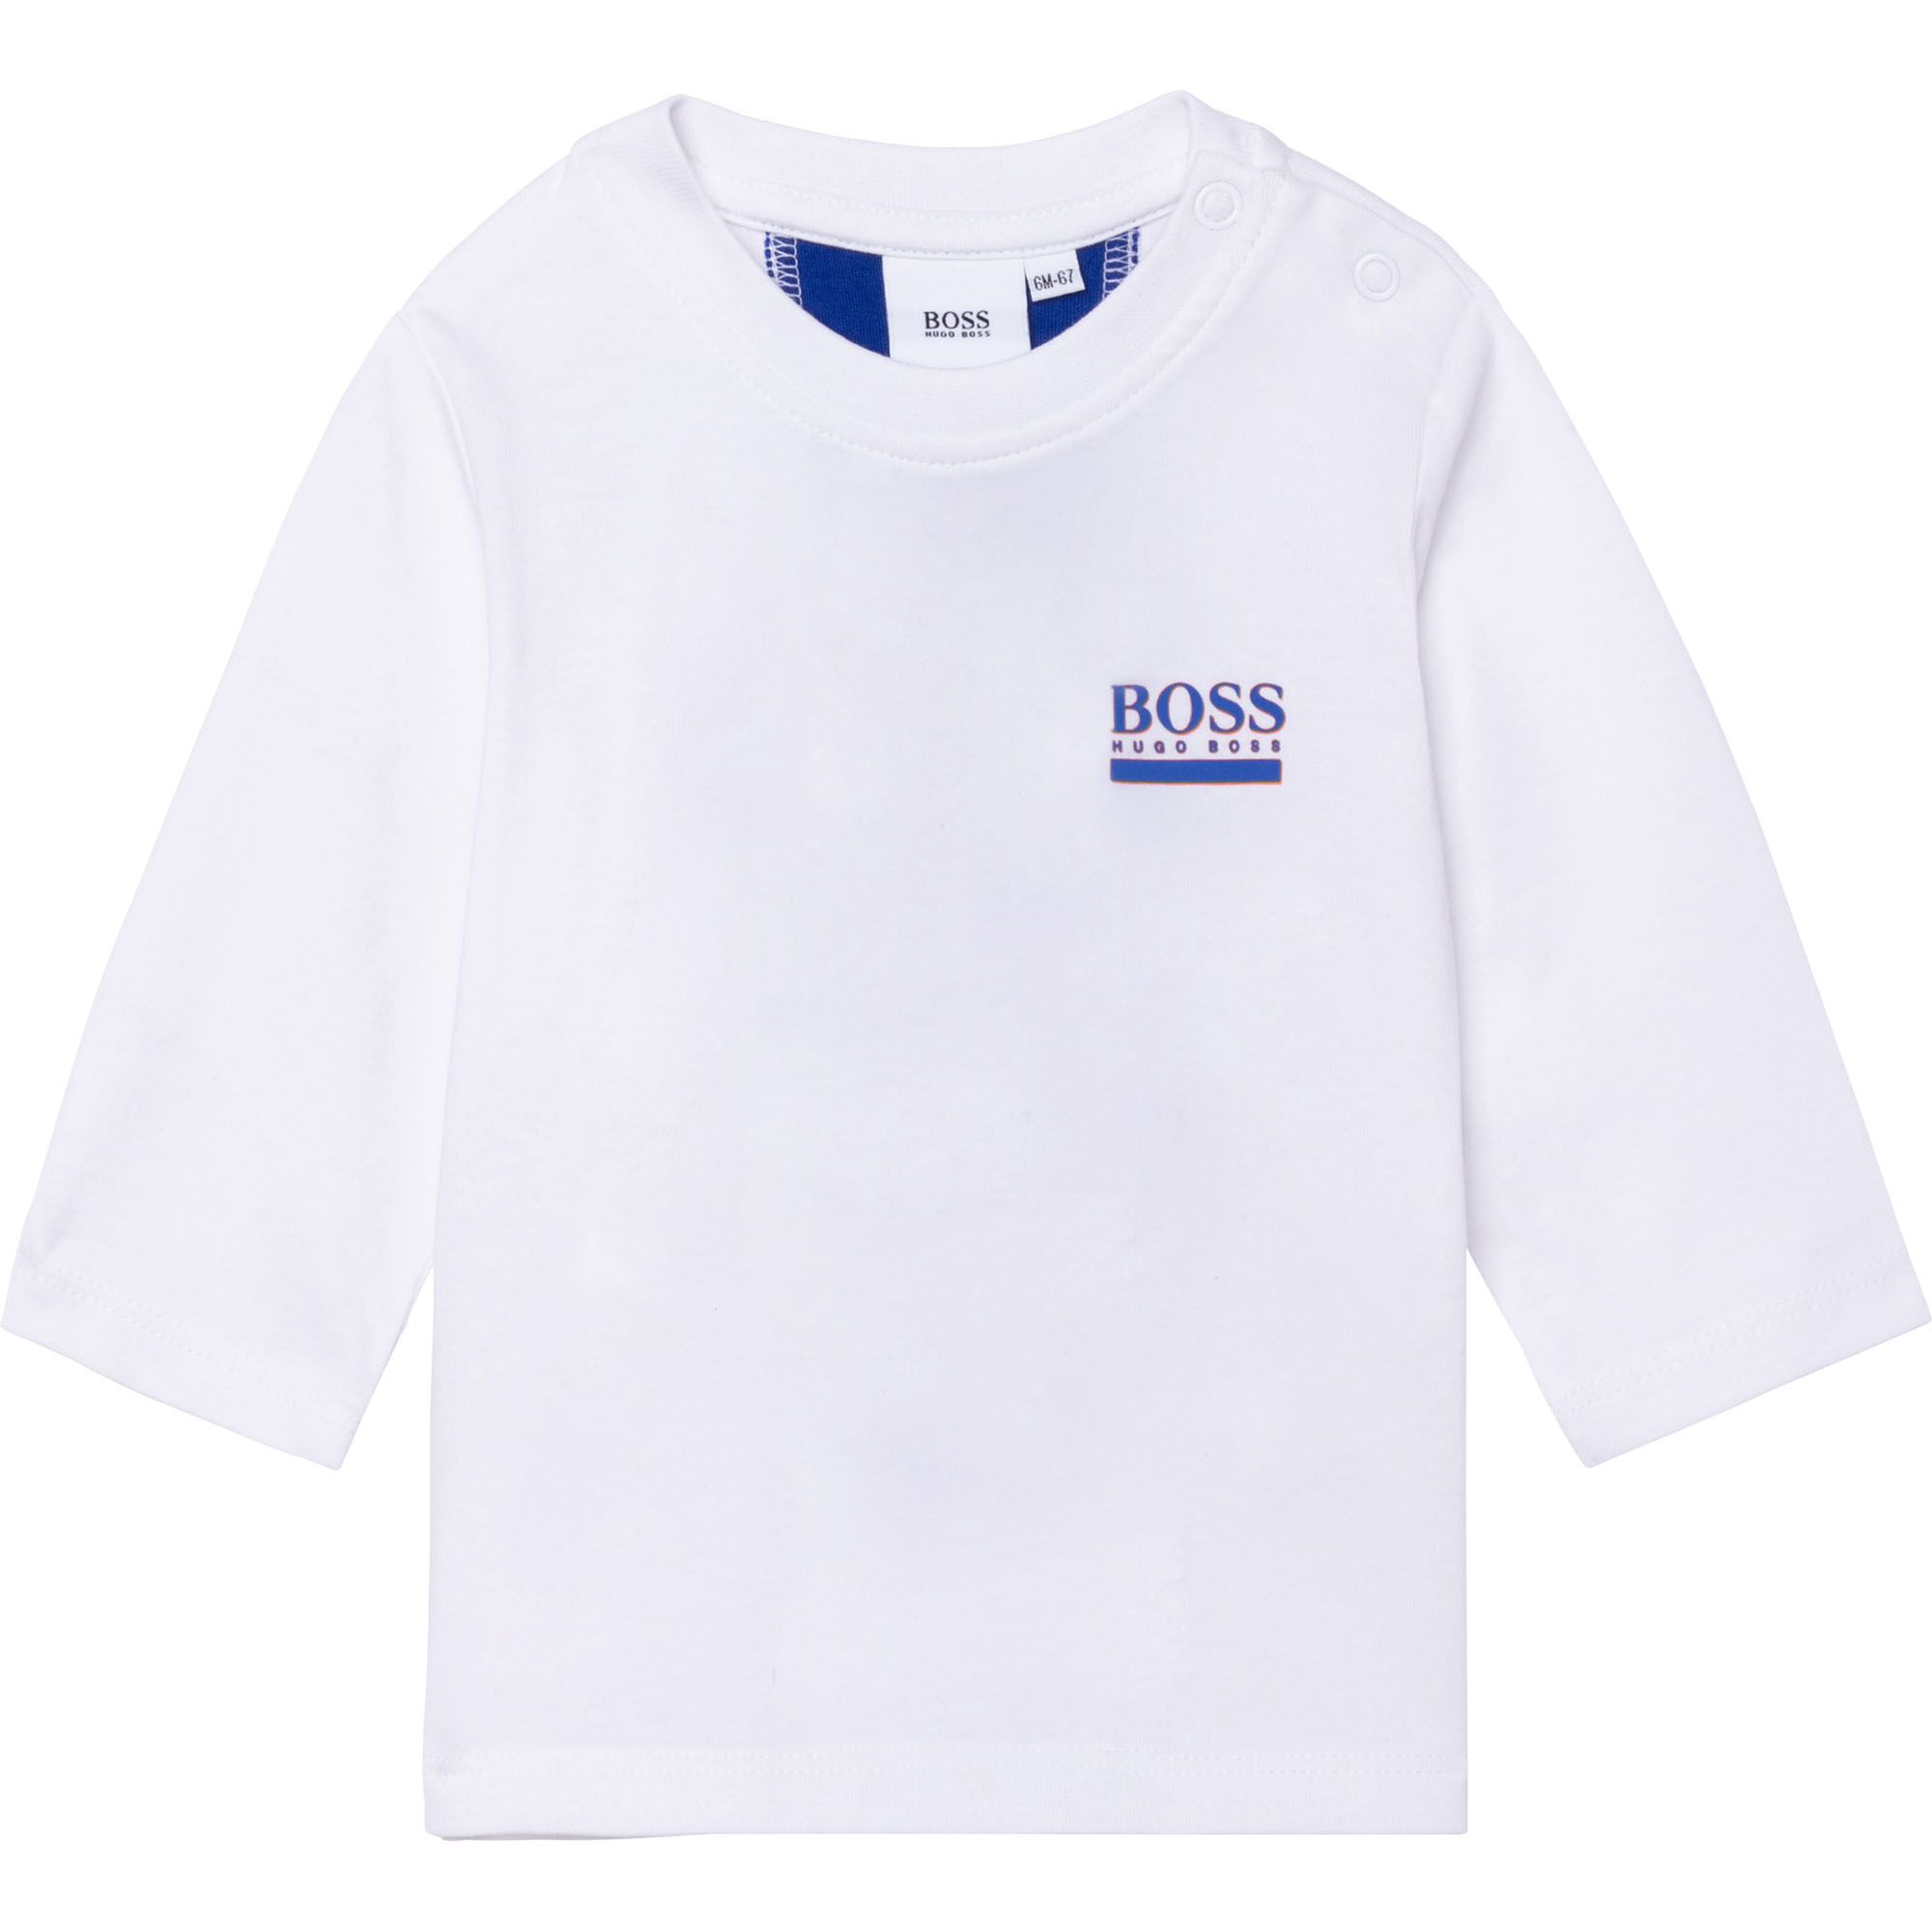 Long-sleeved jersey T-shirt BOSS for BOY